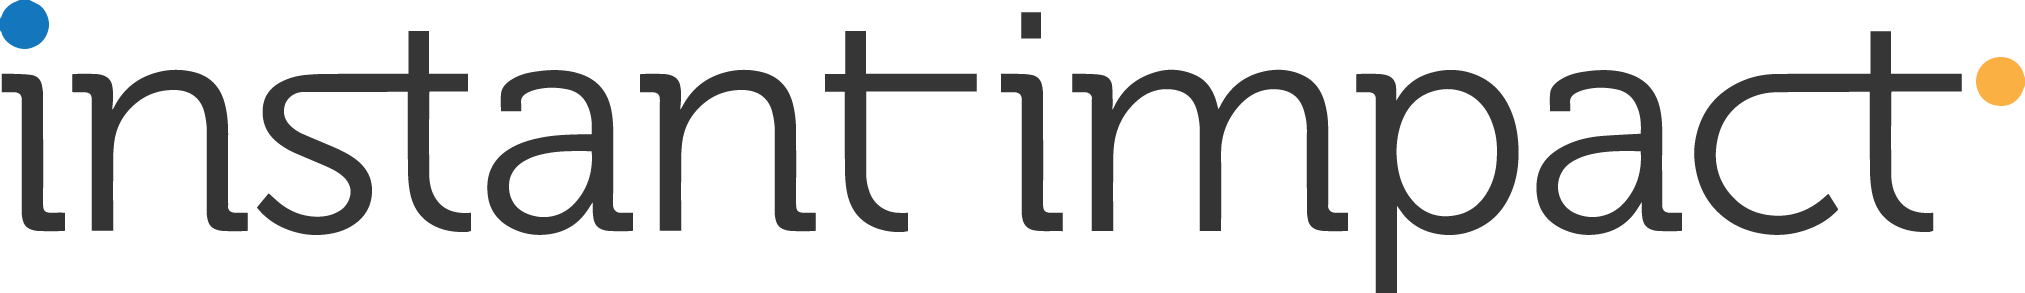 Full logo dark lettering